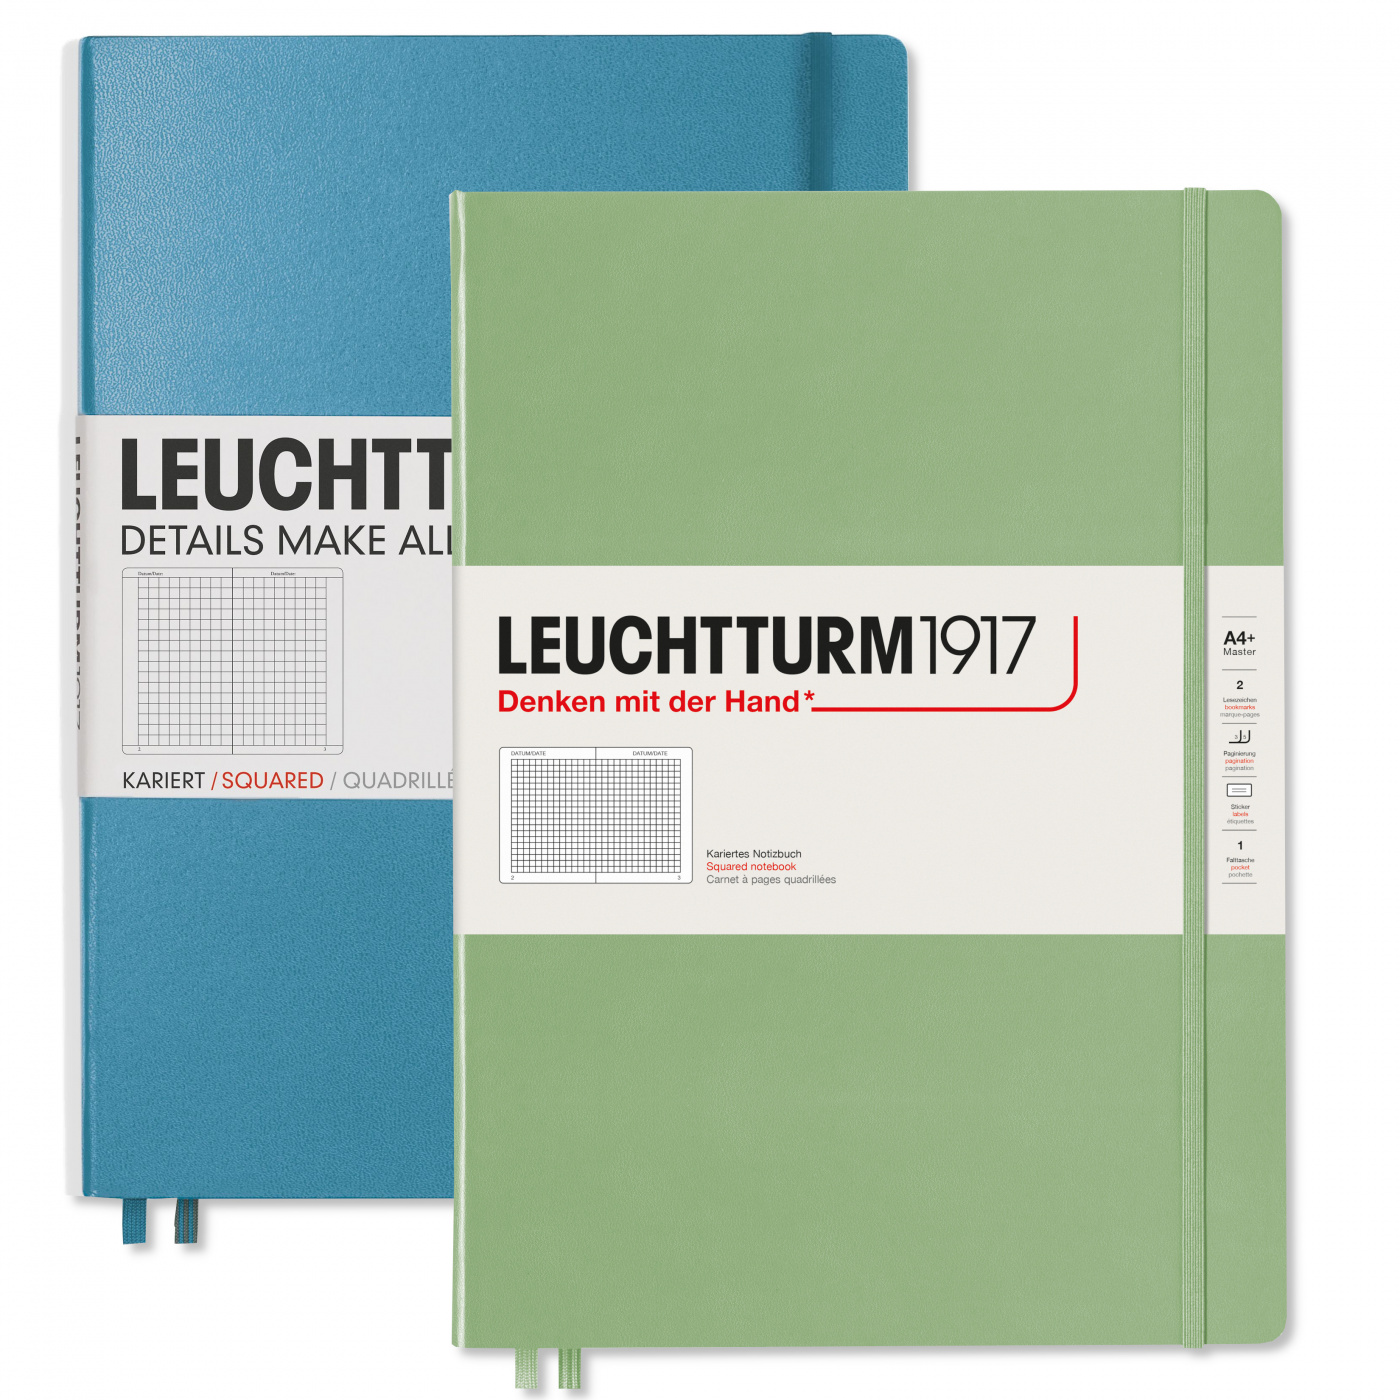 Записная книжка в клетку Leuchtturm Master Slim А4+ 123 стр., твердая обложка